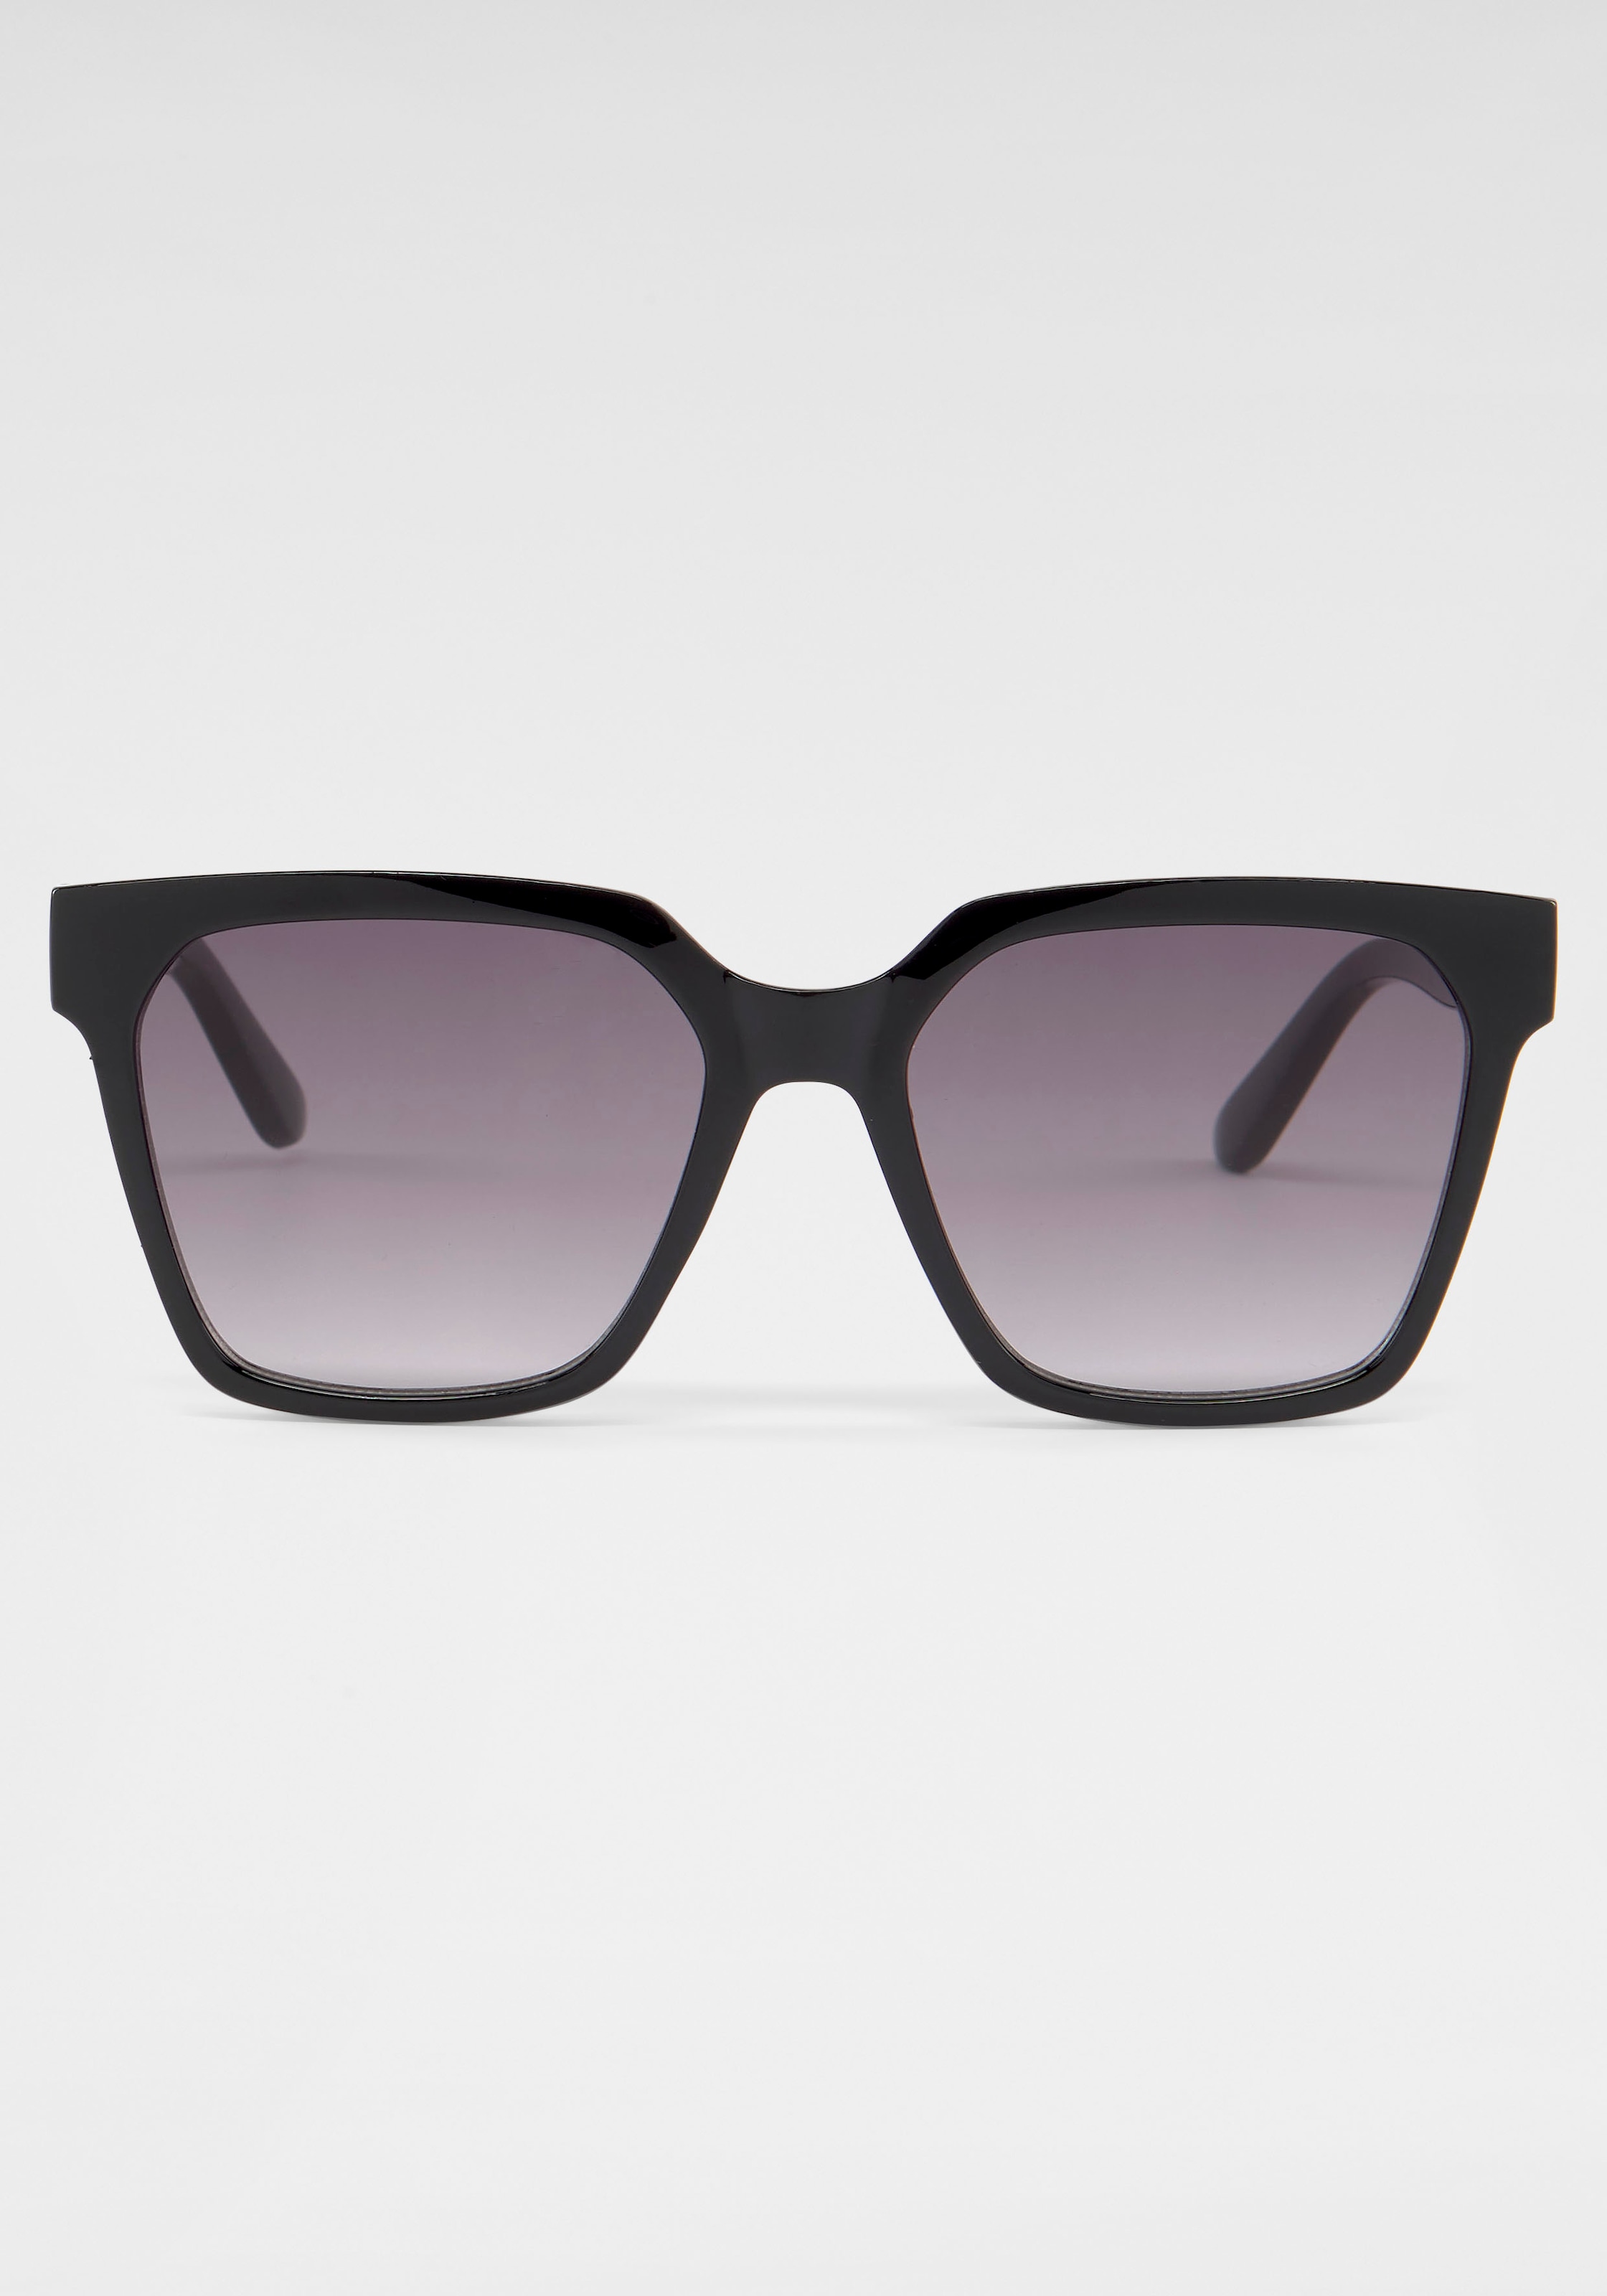 catwalk kaufen Eyewear online Retrosonnenbrille